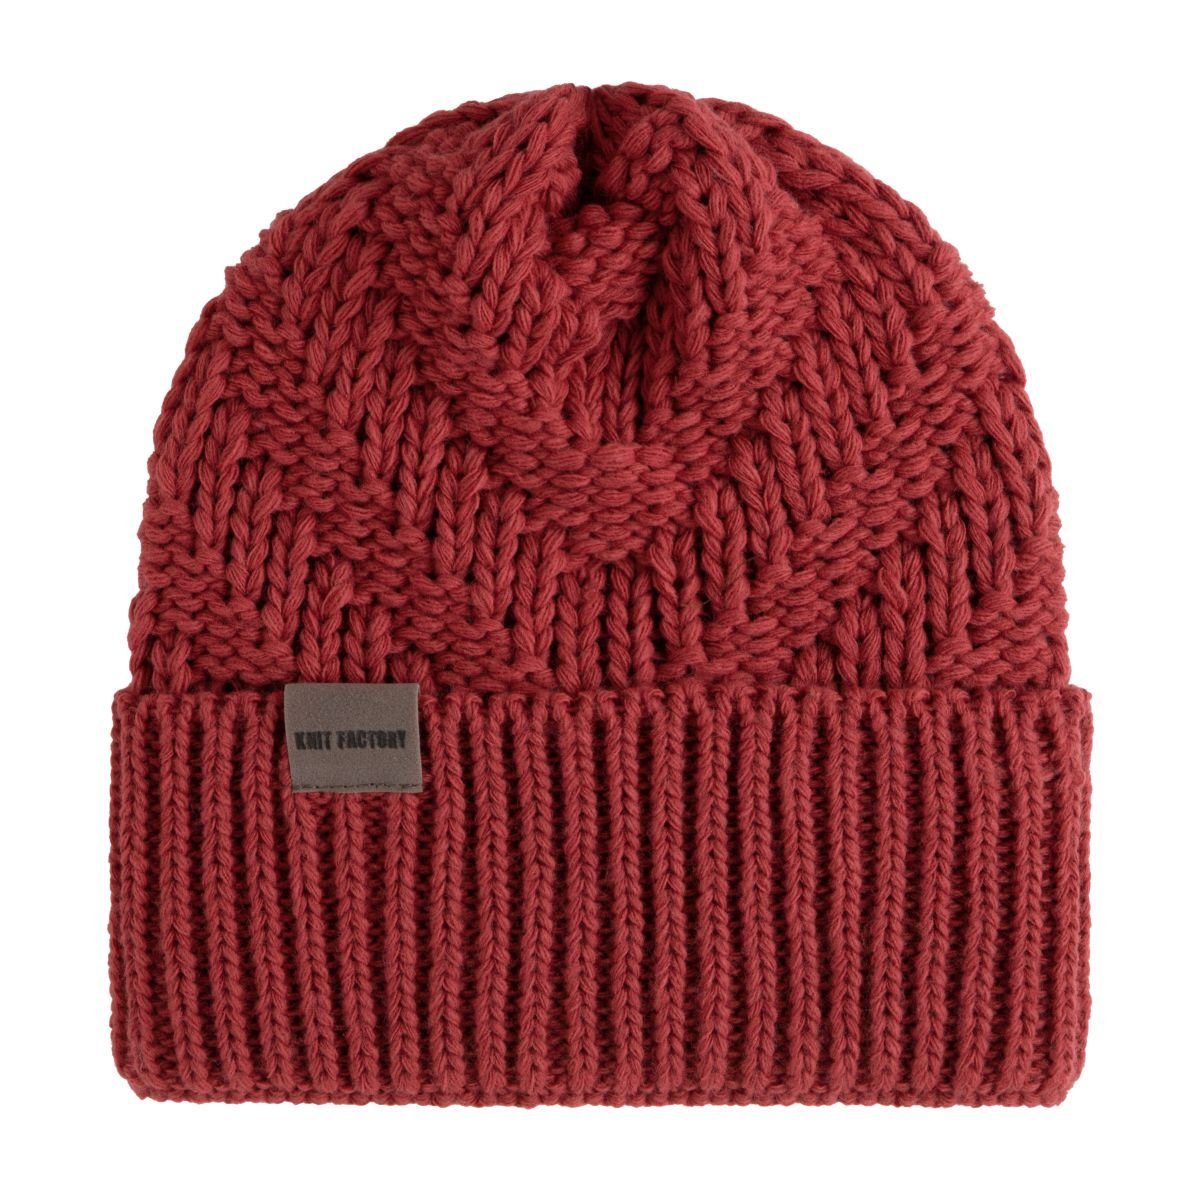 Knit Factory Strickmütze Sally Mützen One Size Glatt Rot (1-St) Mütze Strickmütze Kopfbedeckung Hut Wollmütze